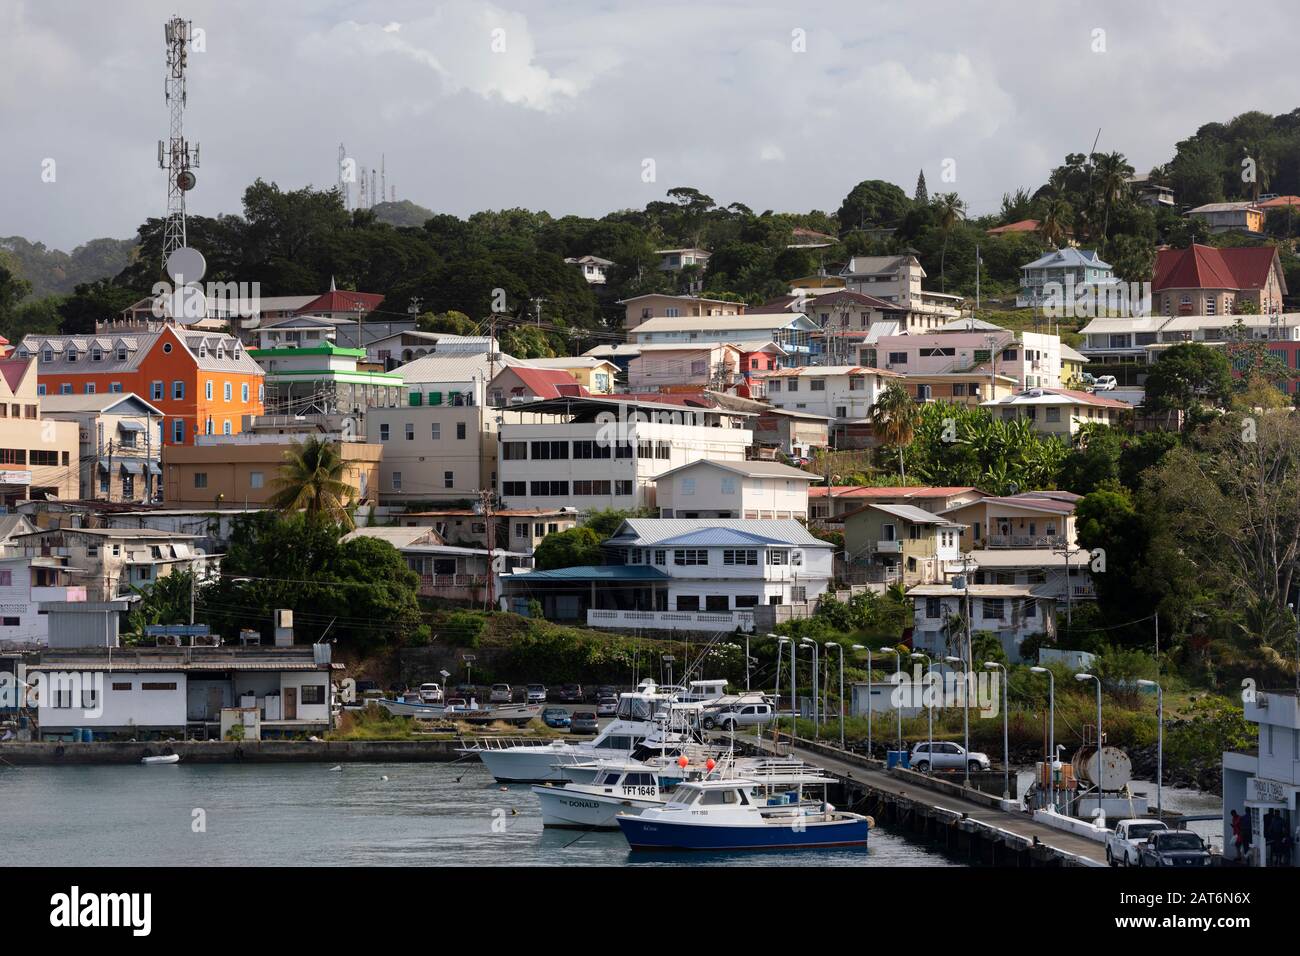 Houses on the waterfront, Scarborough, Tobago, Trinidad and Tobago Stock Photo